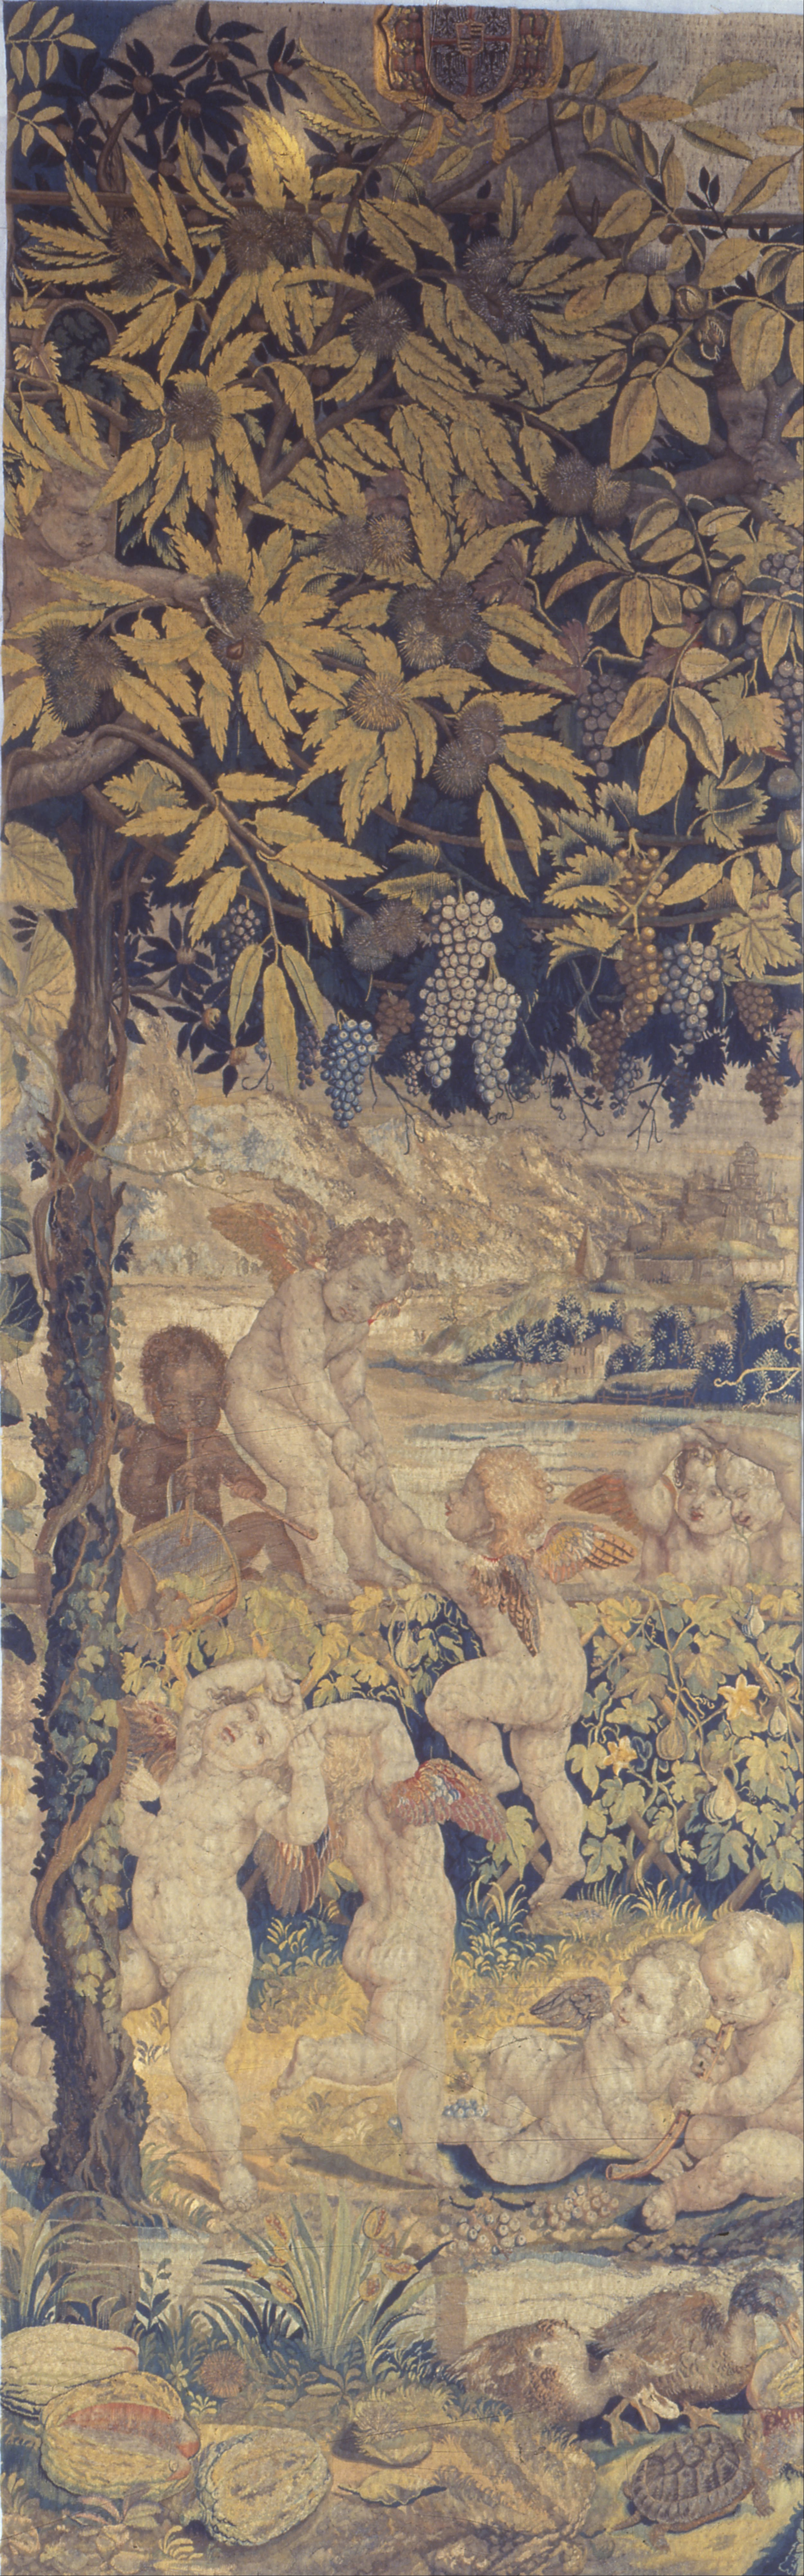 Arazzo con giochi di putti by Giulio Romano - 1540 - 1545 - 107 x 341 cm 